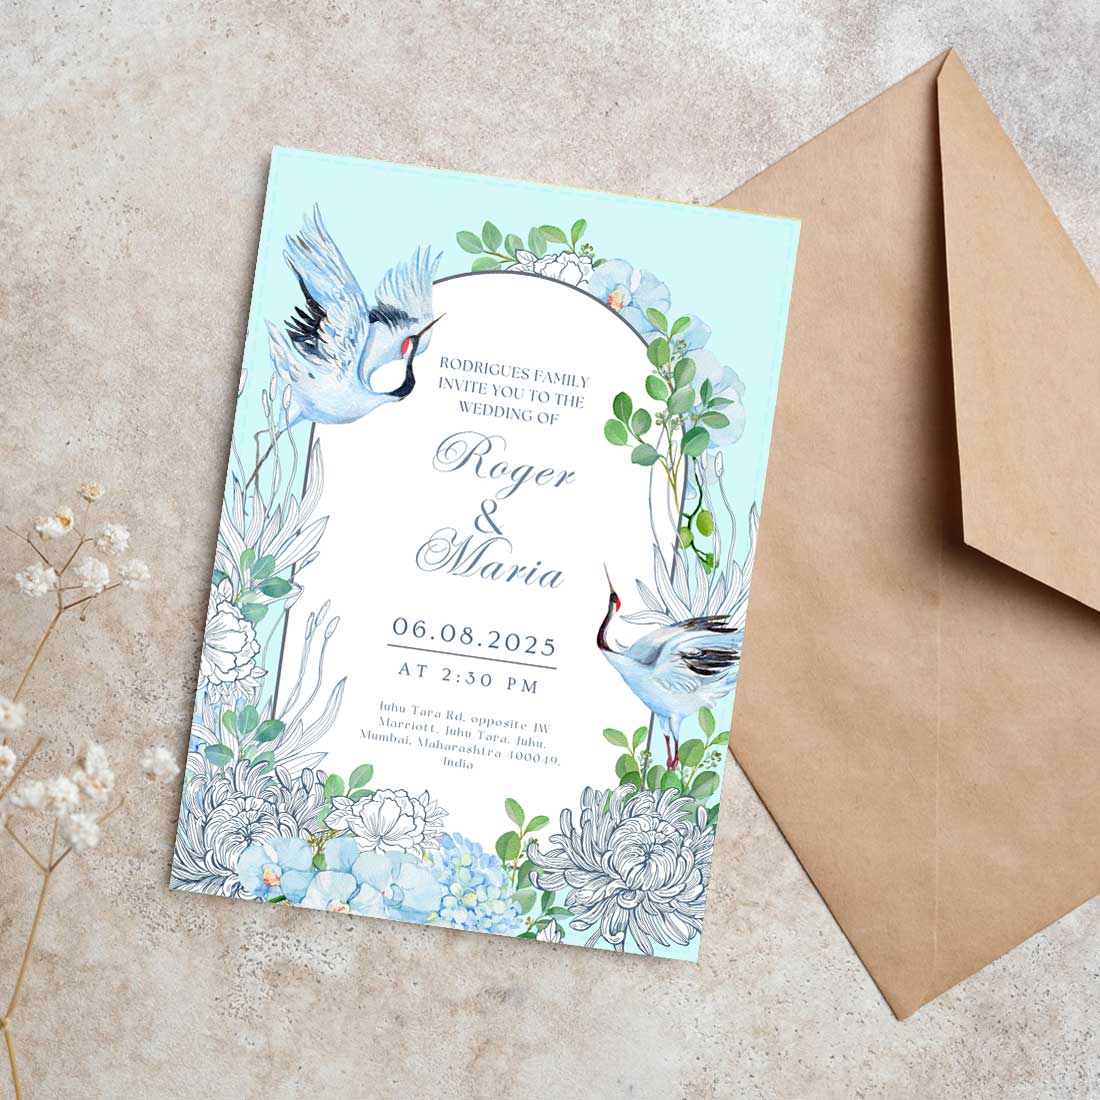 Marriage Wedding Card - Custom Invitation Card for Wedding